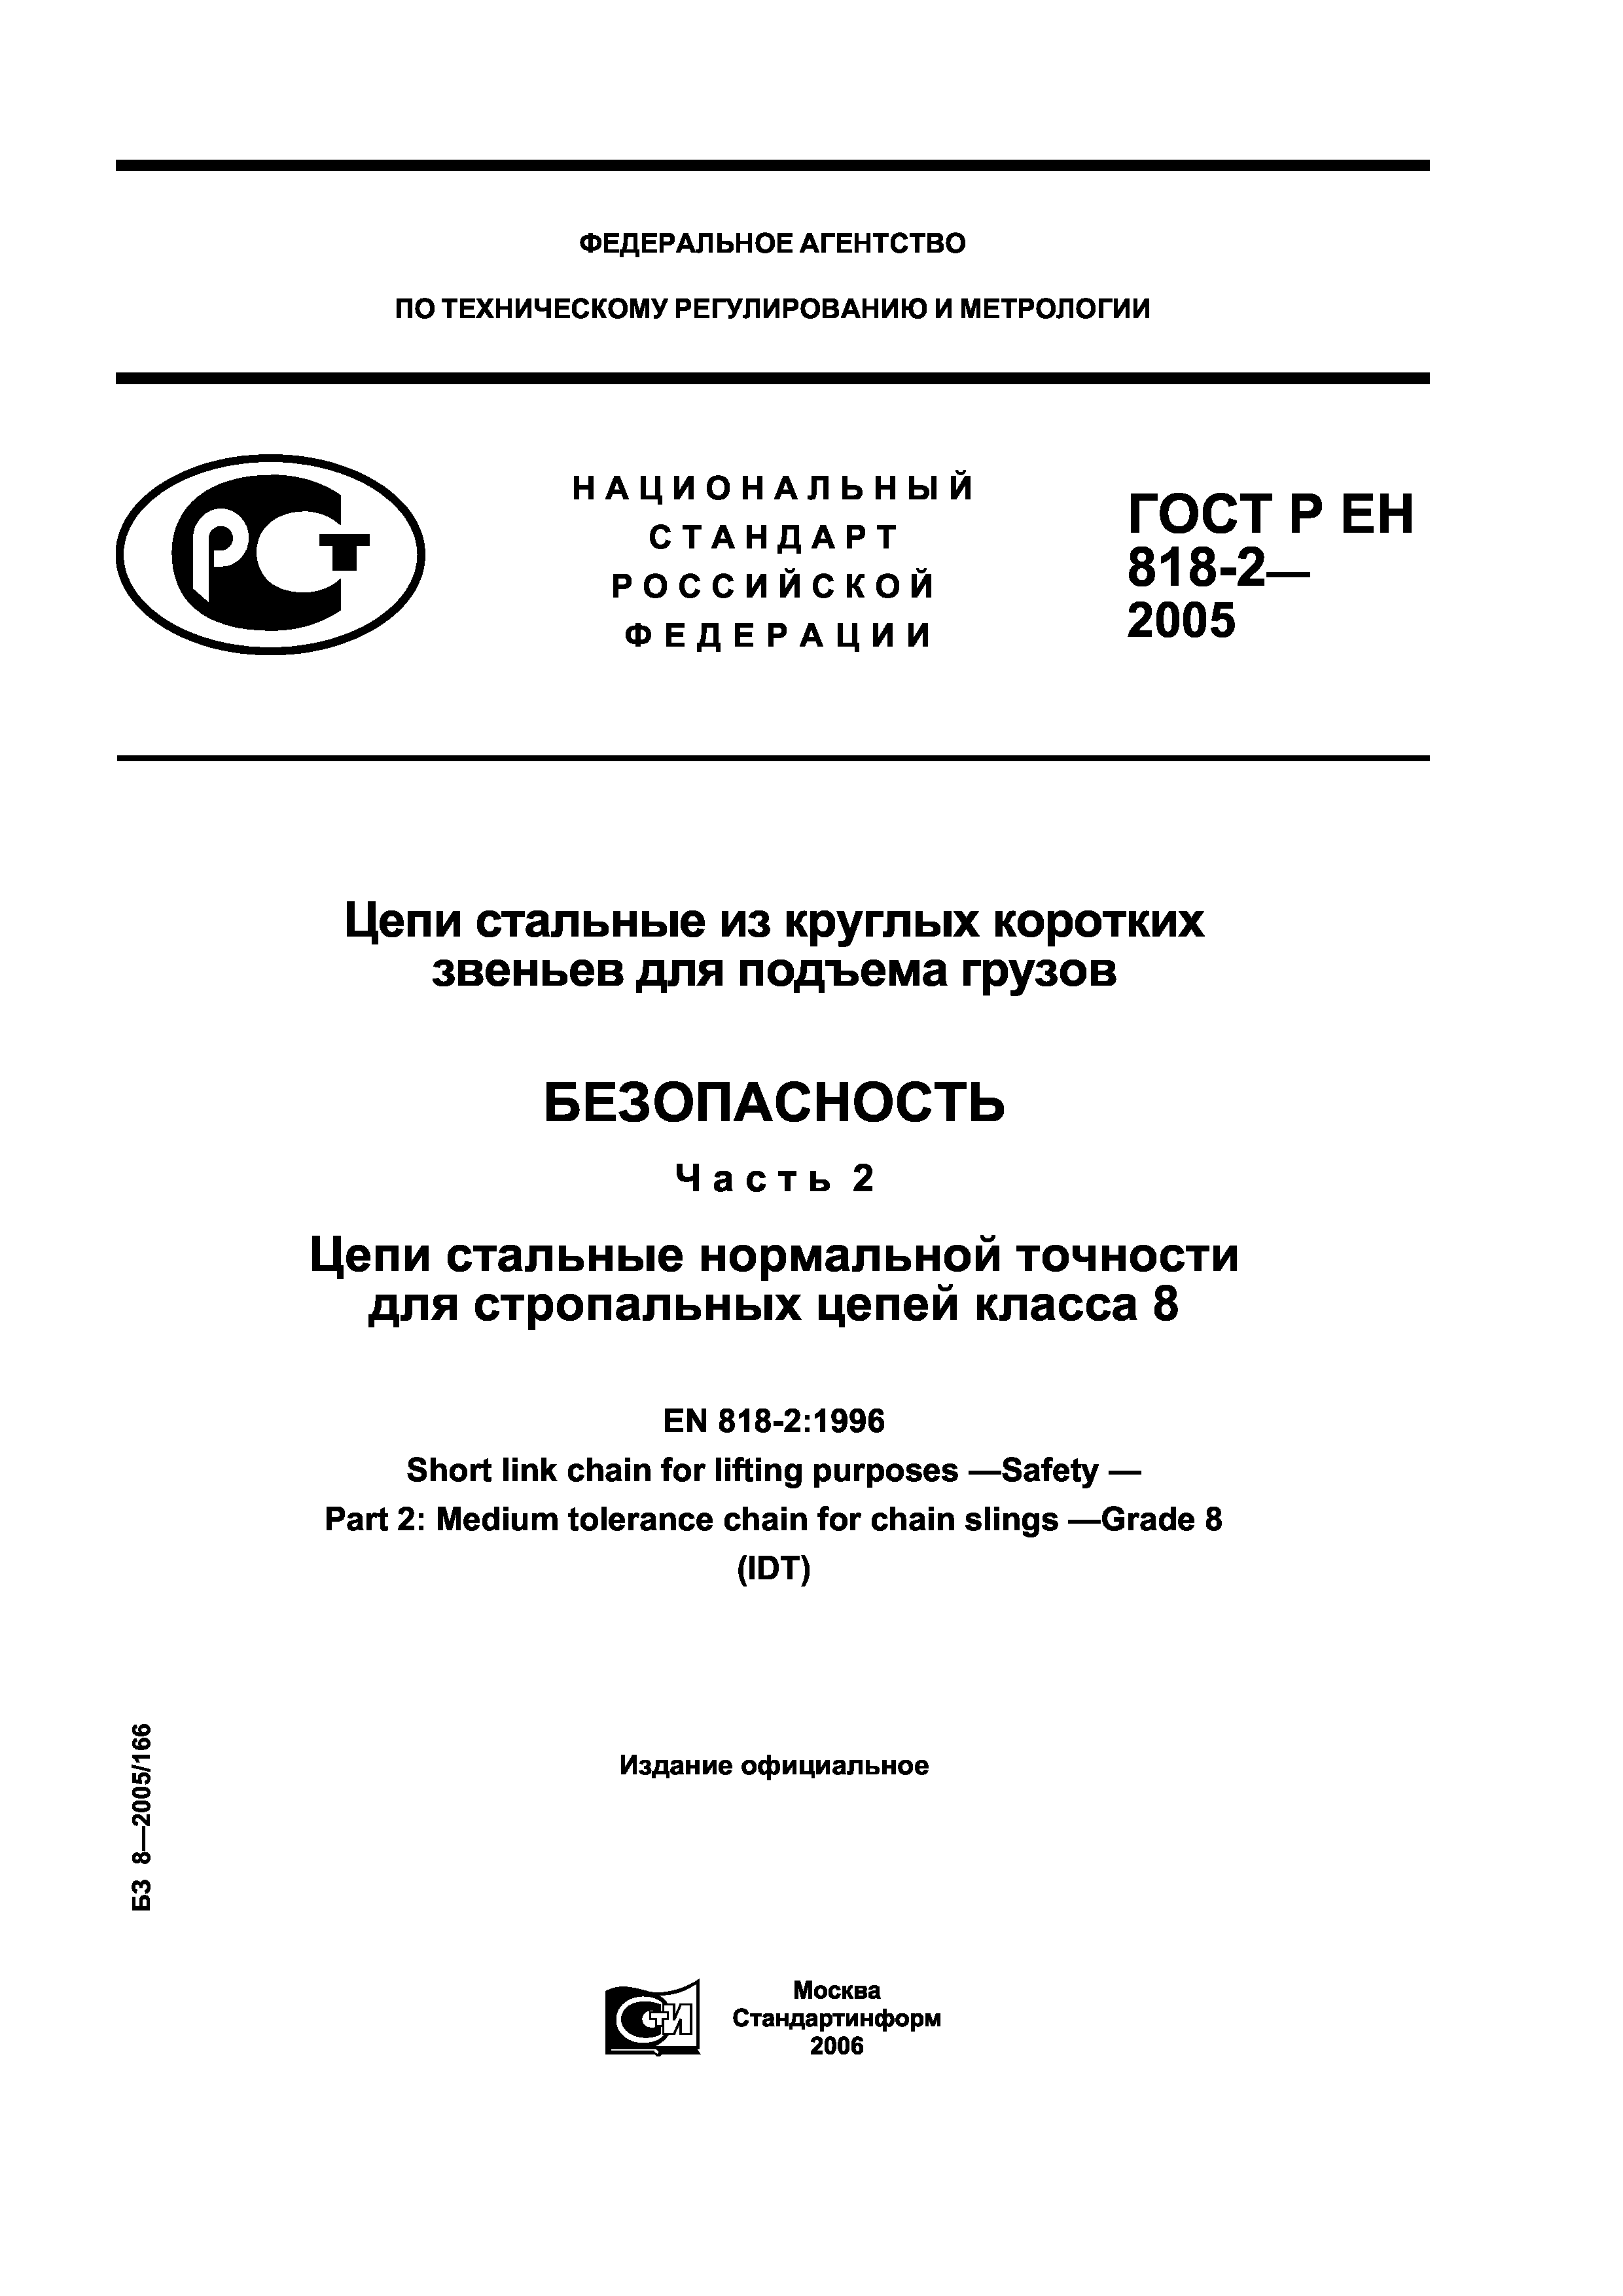 ГОСТ Р ЕН 818-2-2005